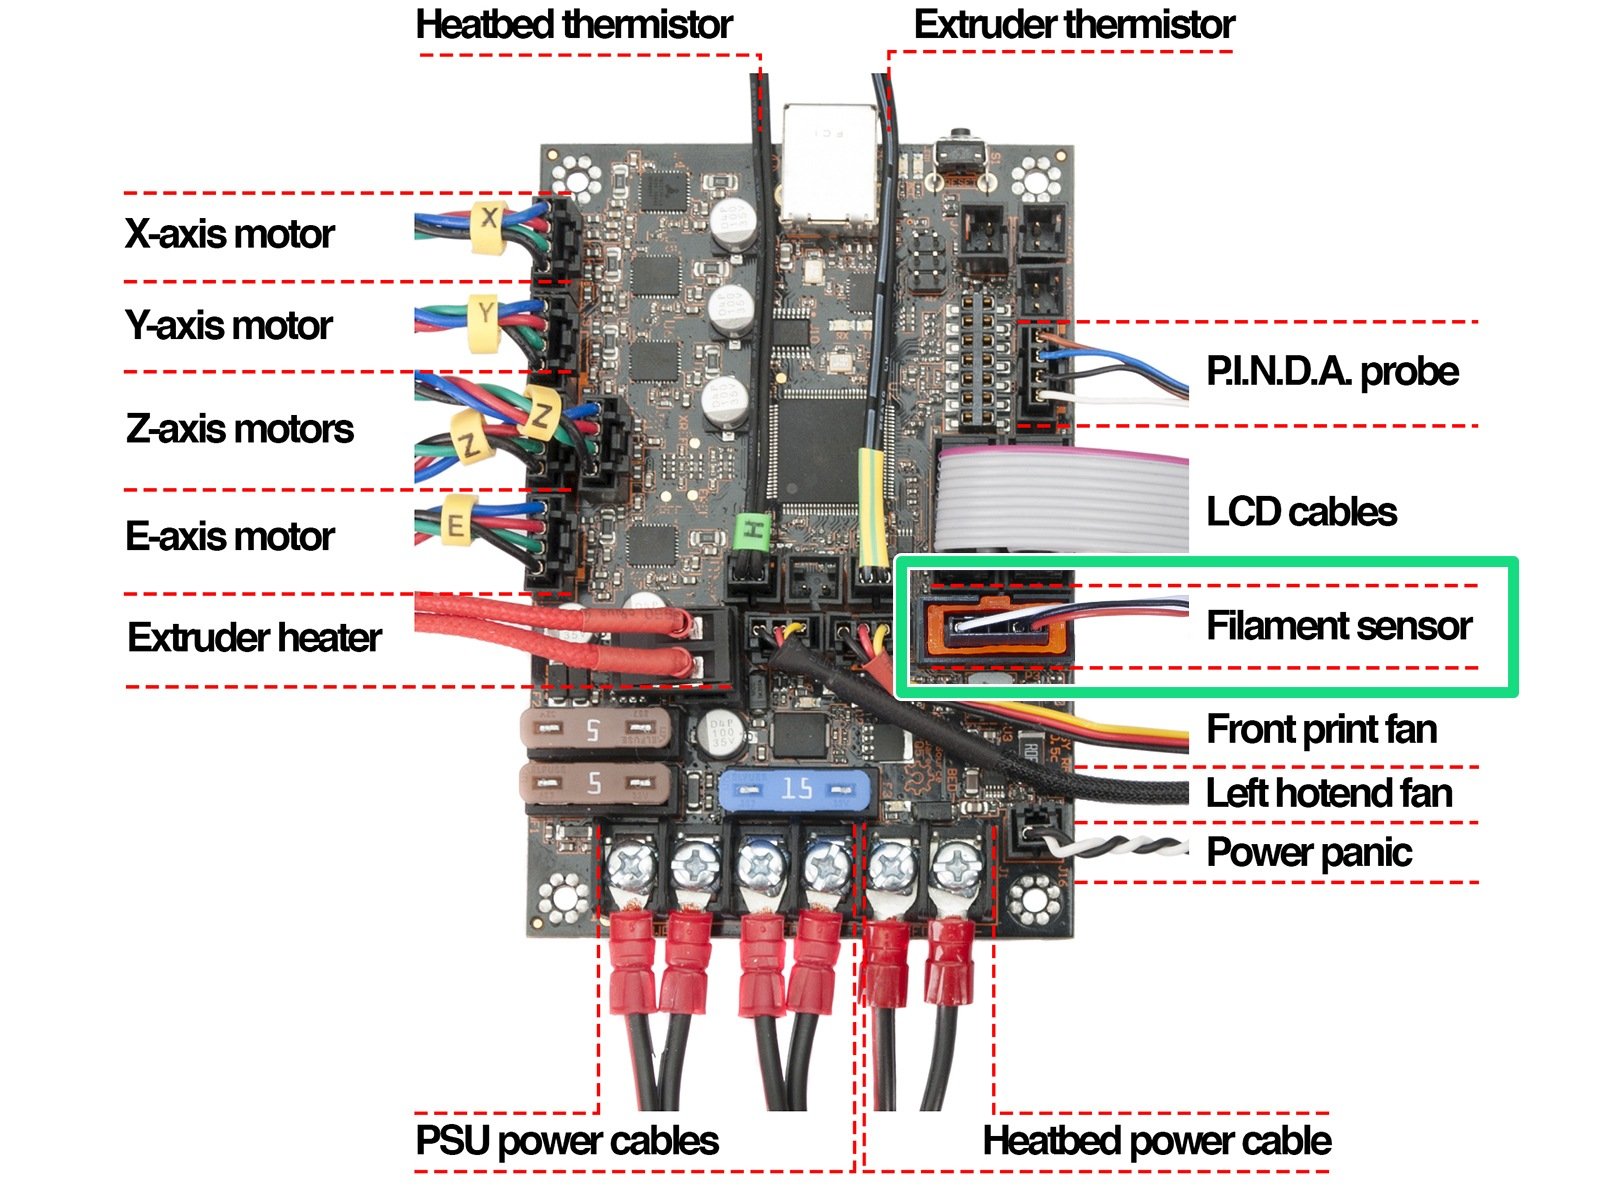 Desconectando el cable del sensor de filamento IR